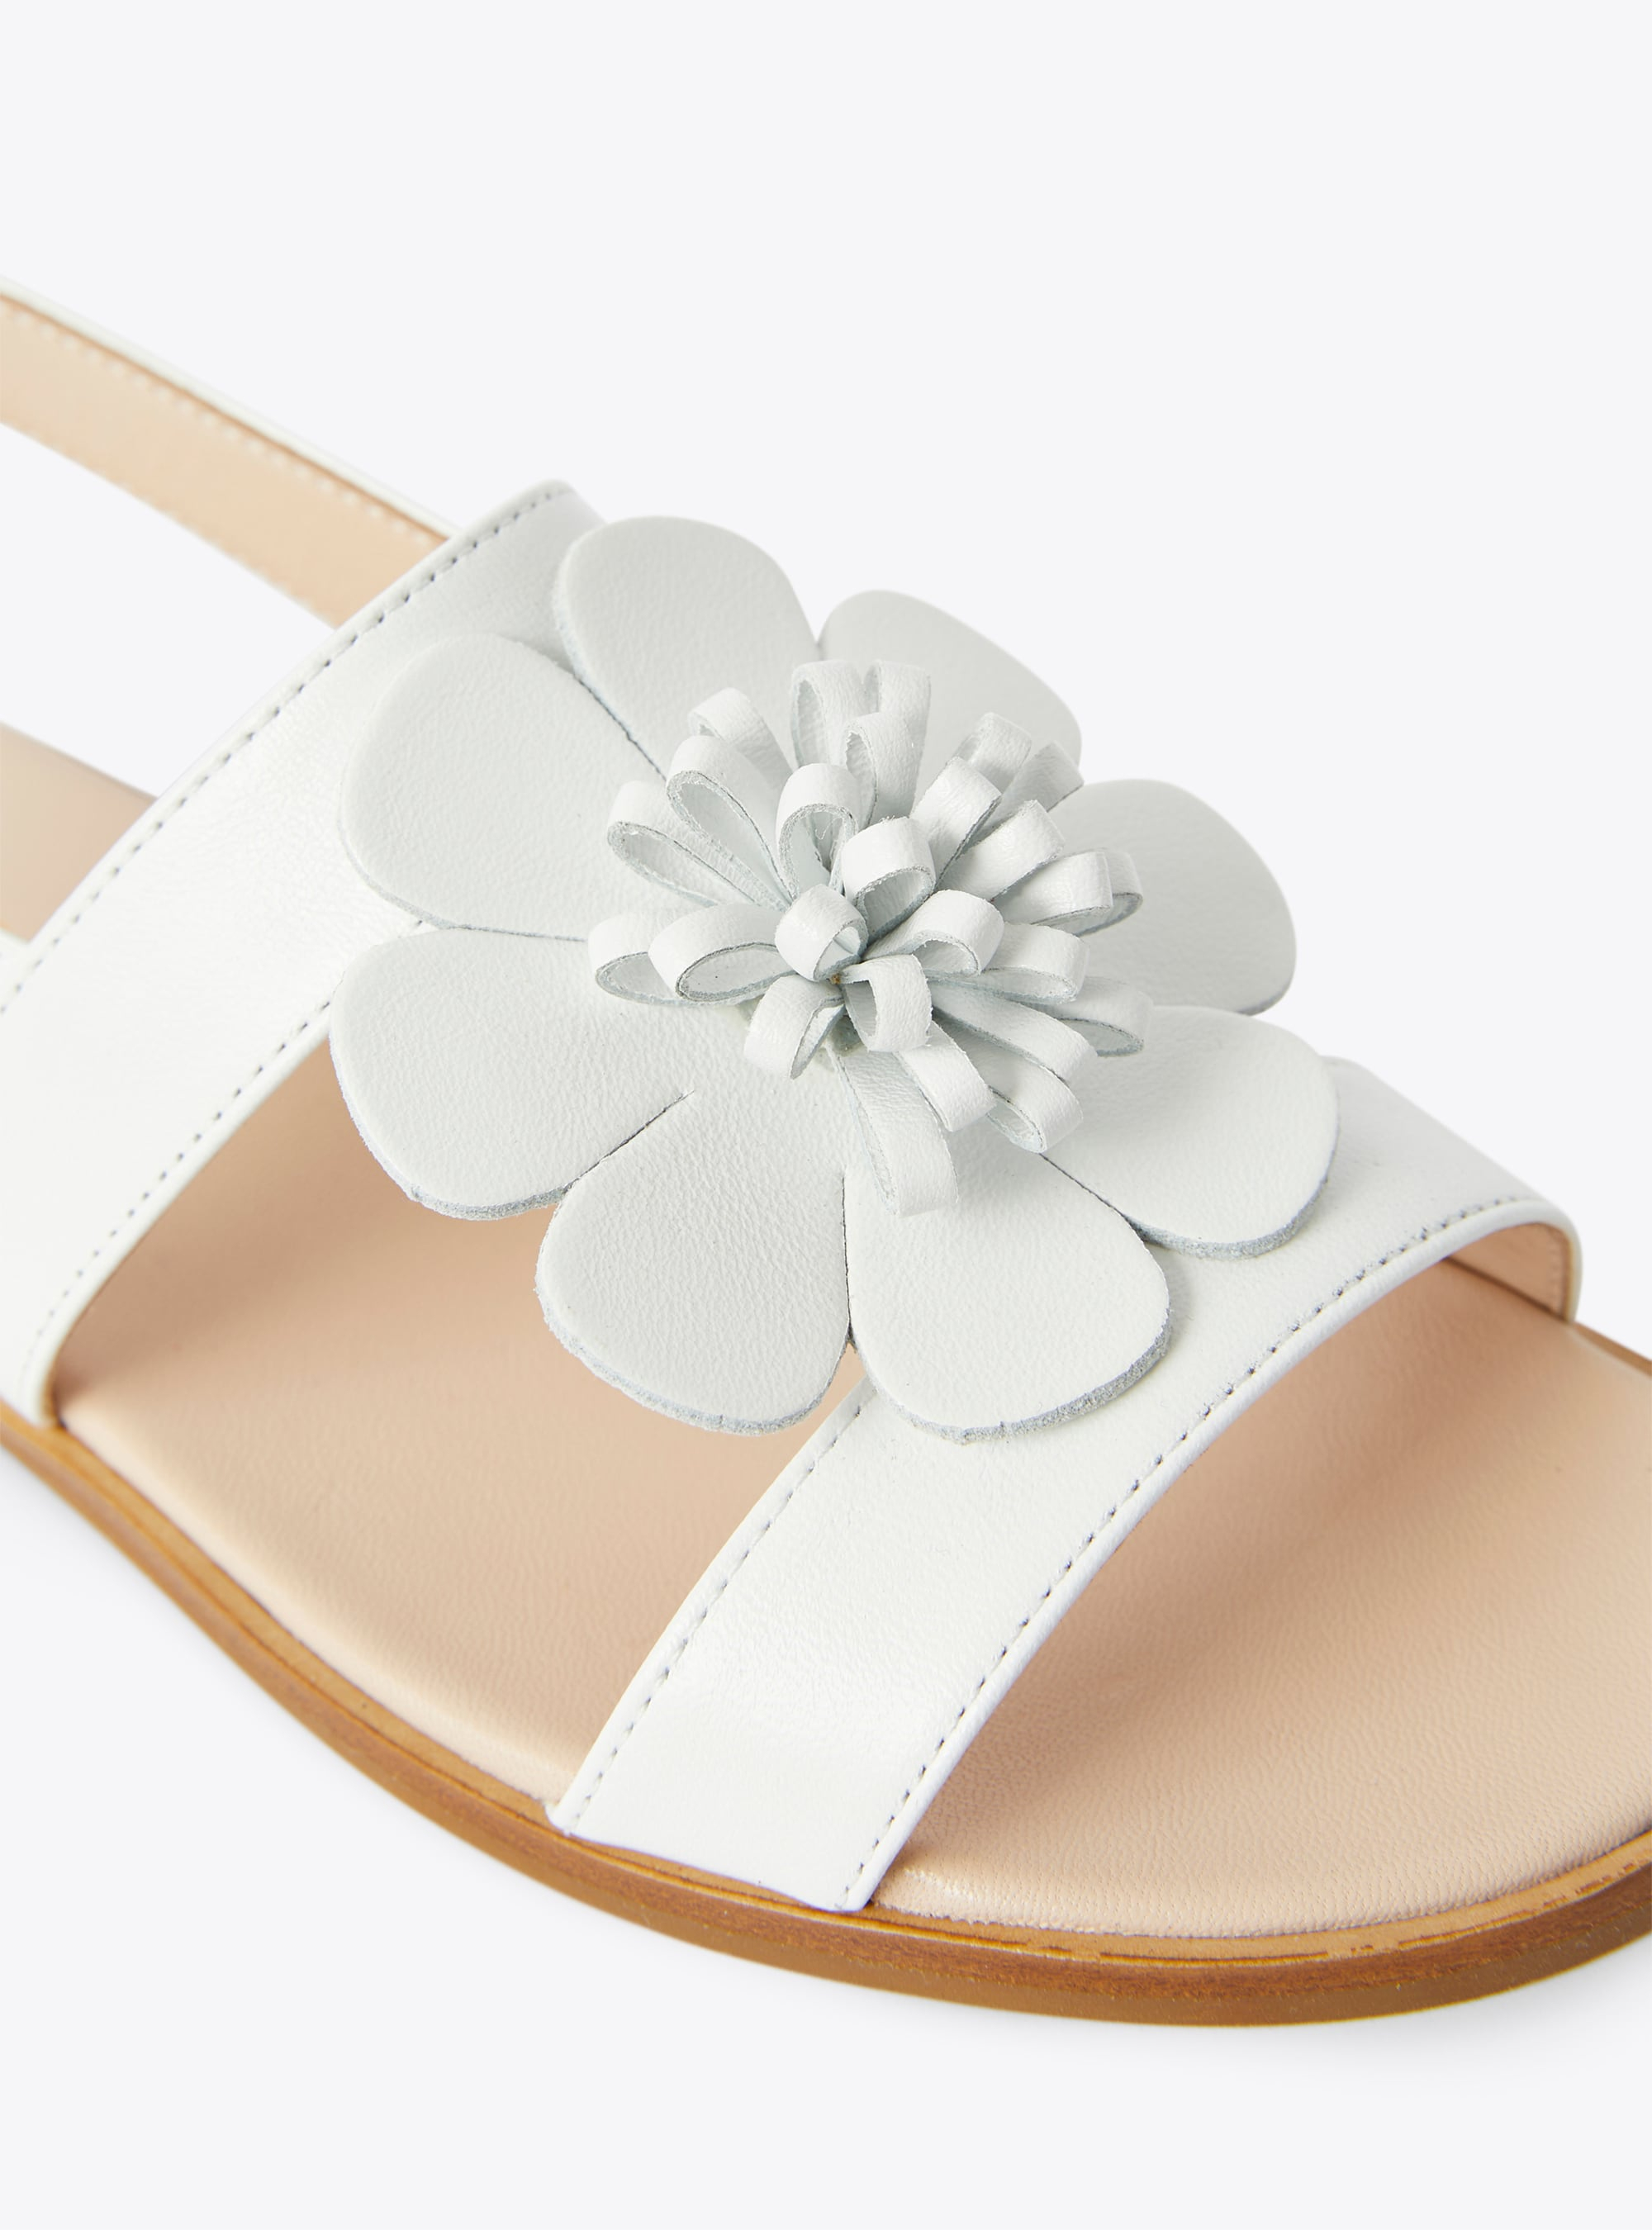 Sandalo in pelle con fiore applicato - Bianco | Il Gufo